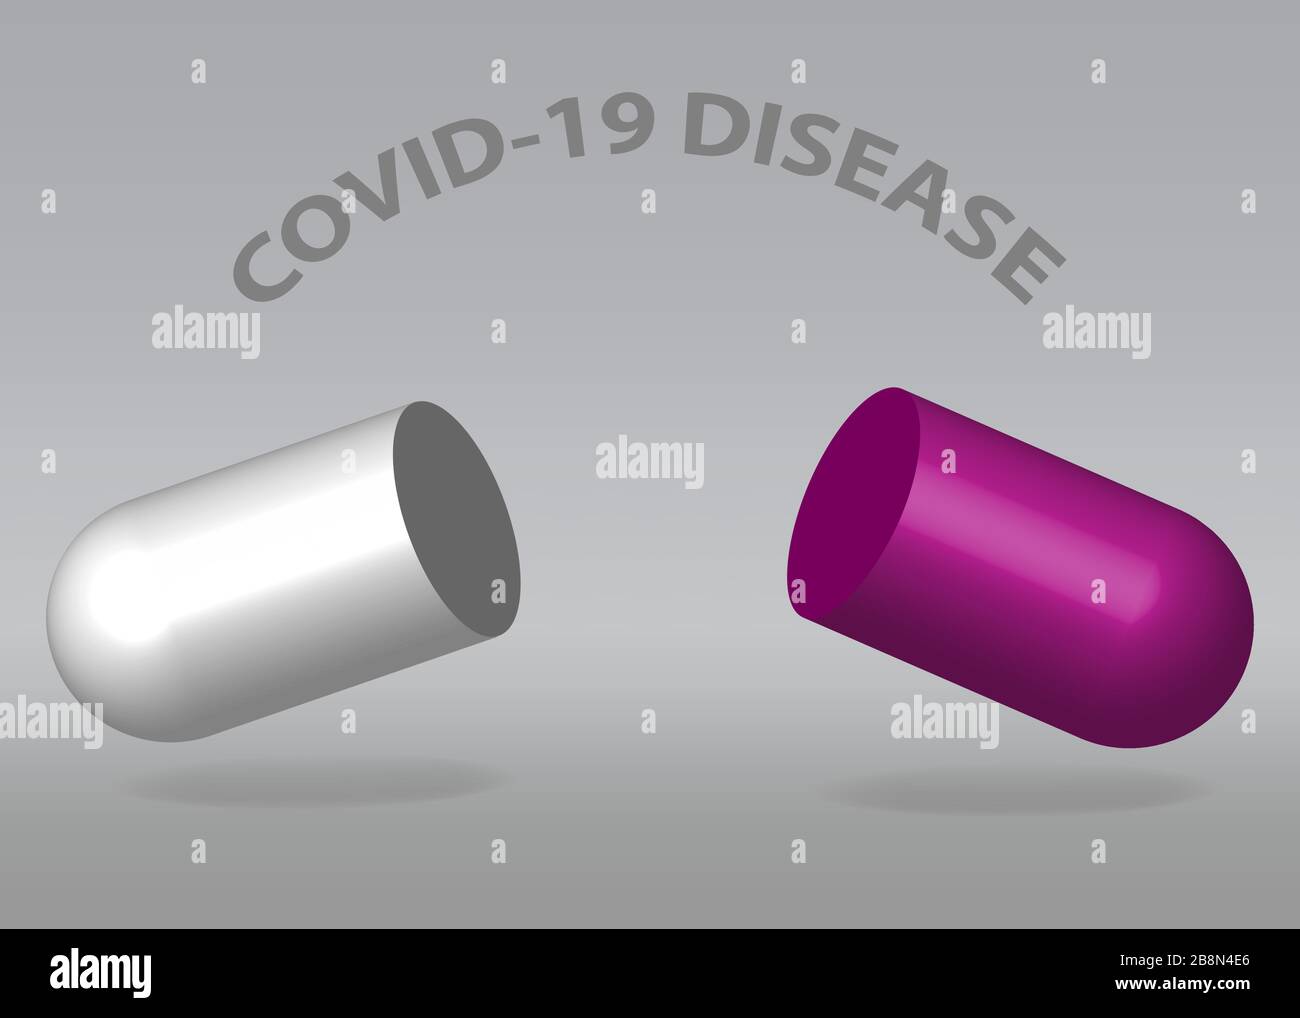 Développement de médicaments pour COVID-19 concept vectoriel montrant une capsule vide avec réduction de moitié avec inscription sur fond gris. Prêt pour votre utilisation. Illustration de Vecteur